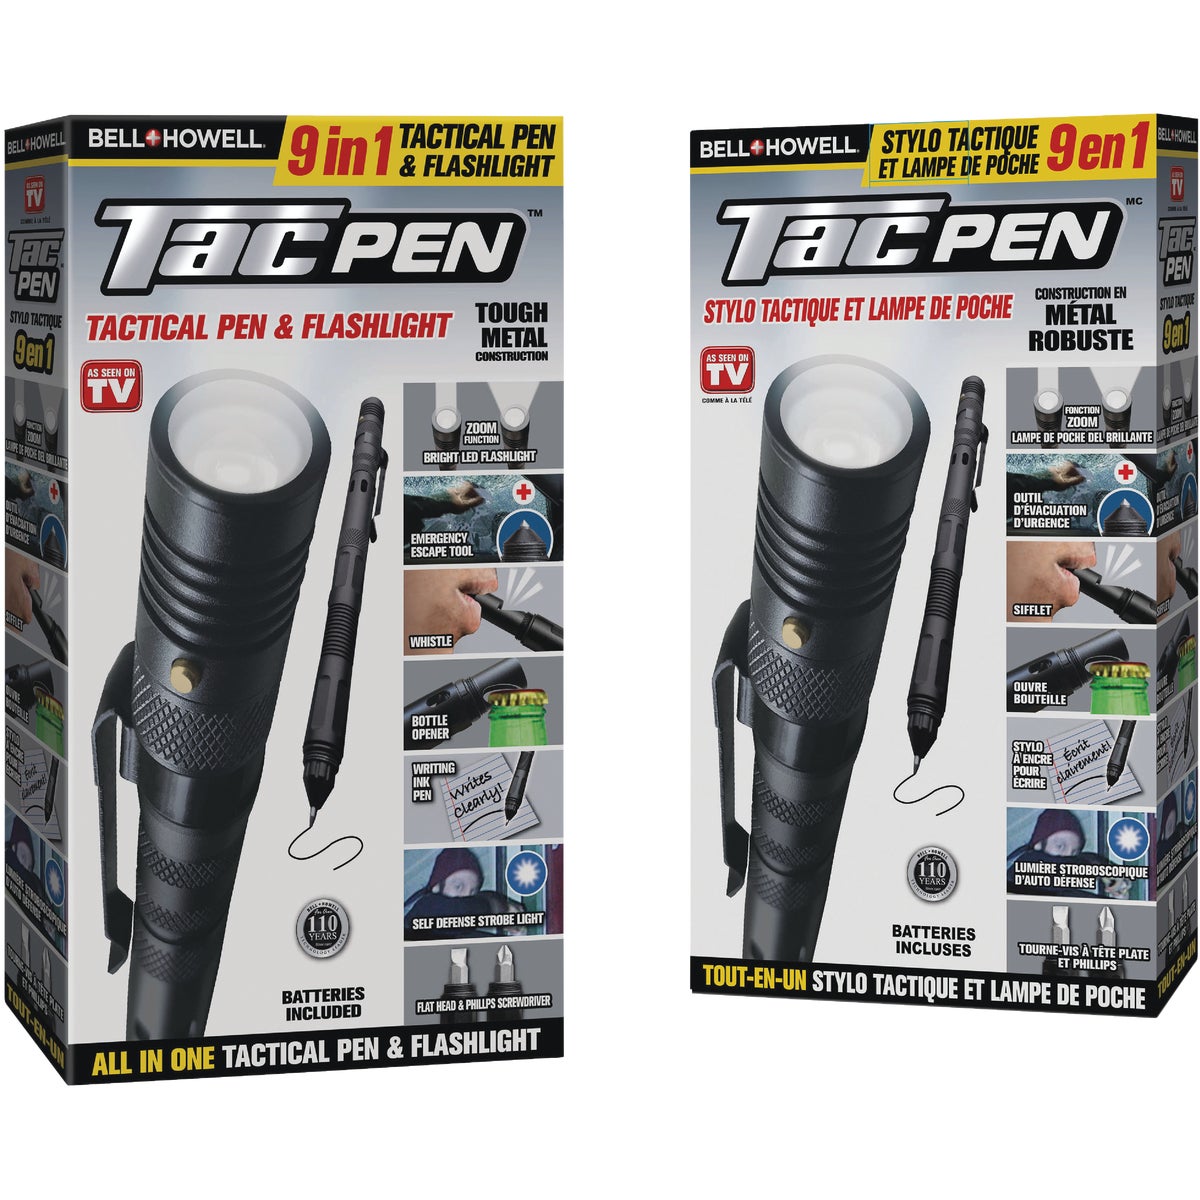 Bell+Howell TacPen Tactical Pen & Flashlight